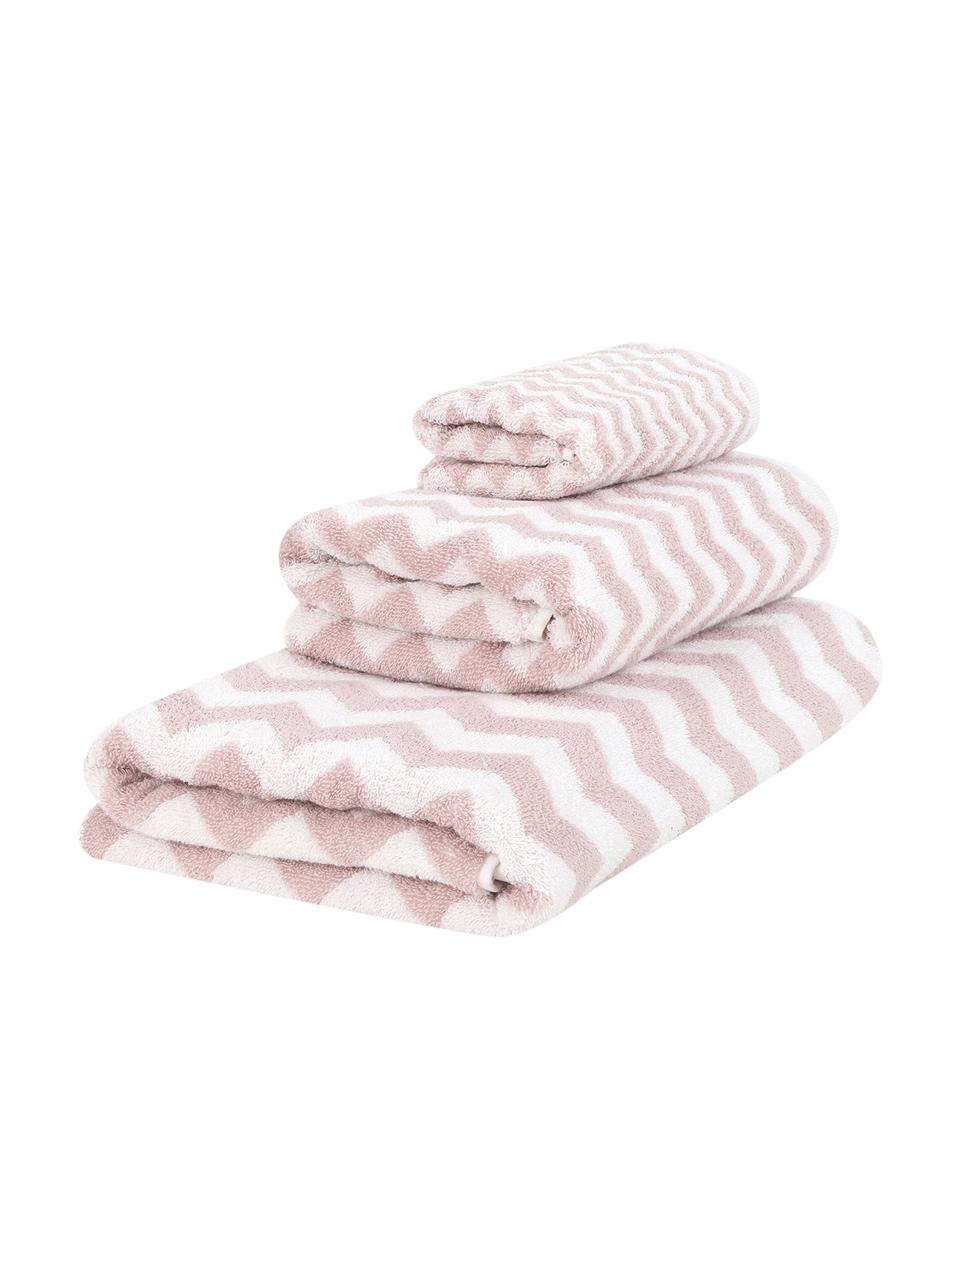 Set de toallas en zigzag Liv, 3 uds., Rosa, blanco crema, Set de diferentes tamaños